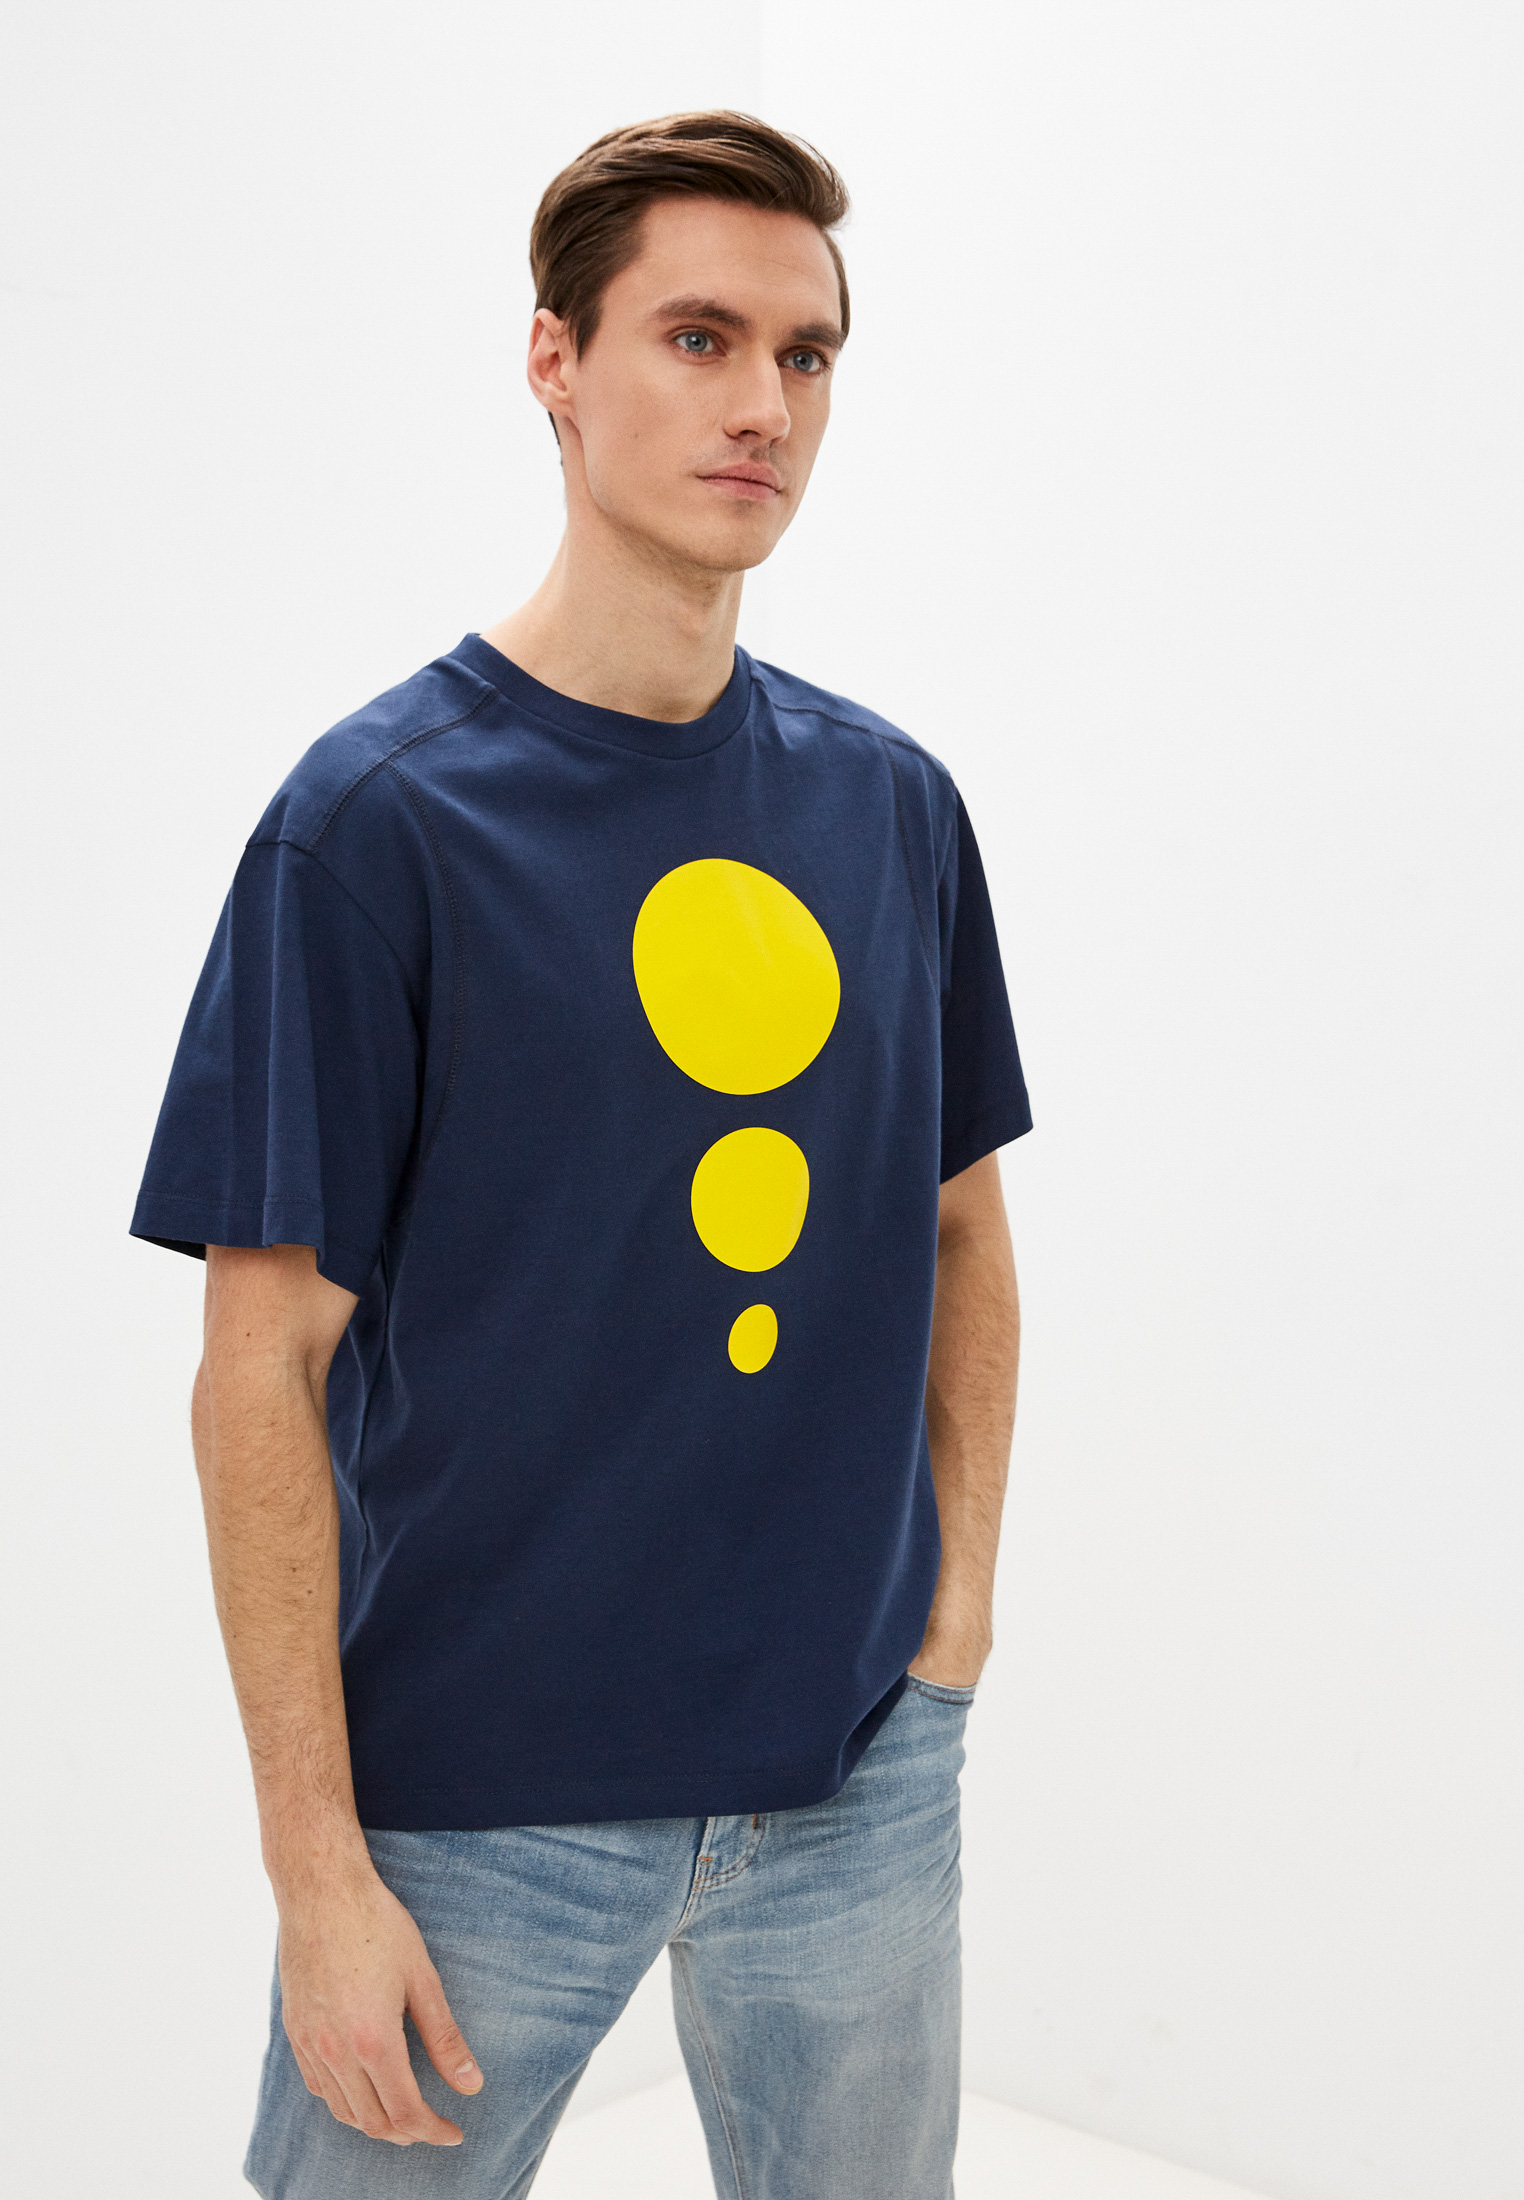 Мужская футболка Bikkembergs (Биккембергс) C 4 091 2T M 4244: изображение 1